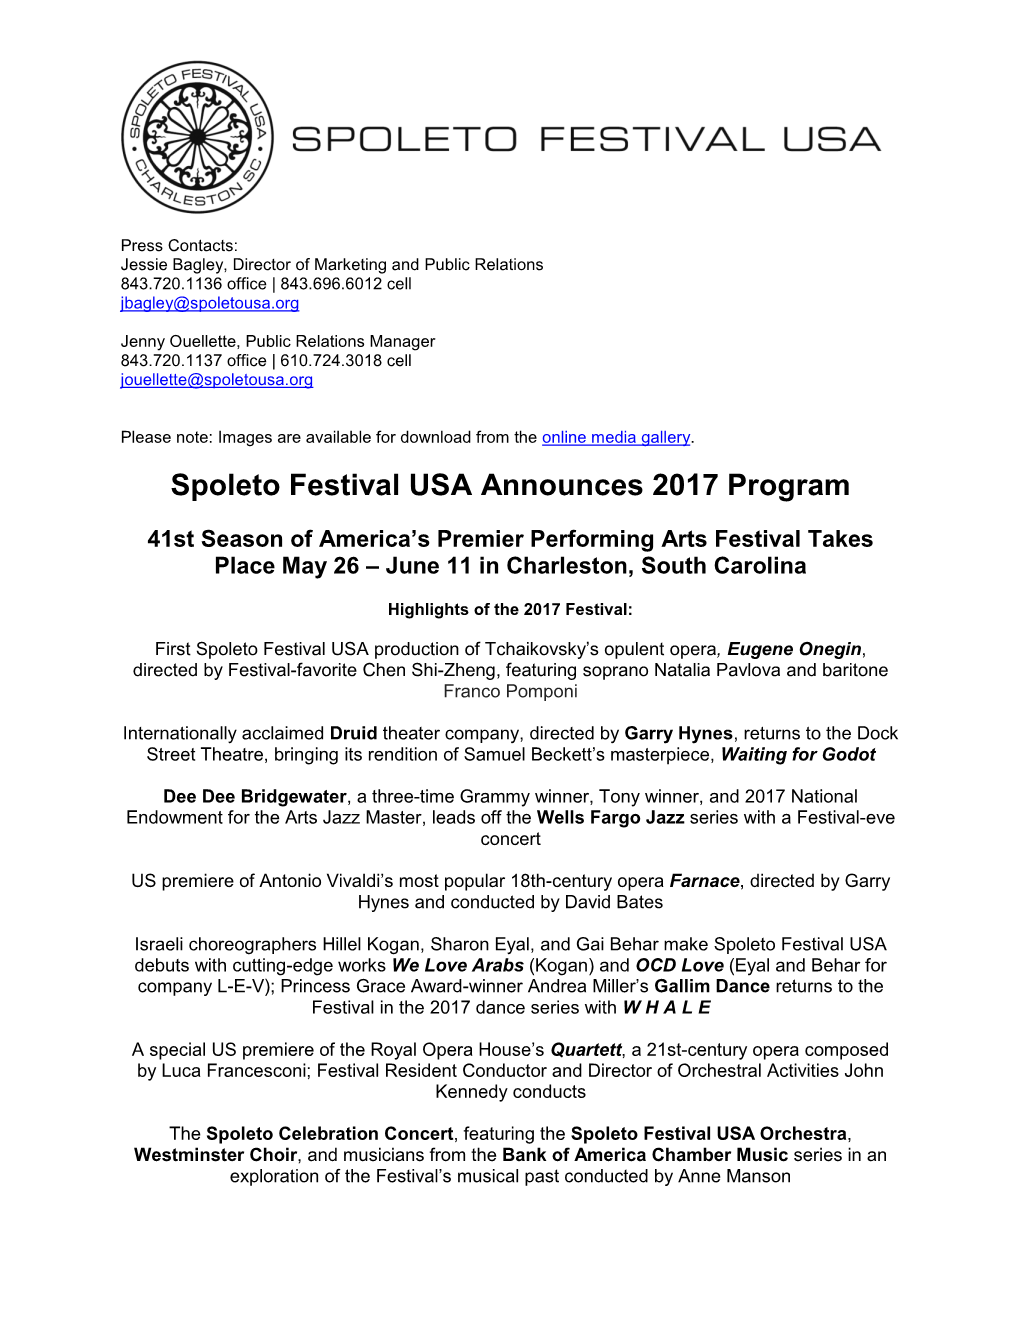 Spoleto Festival USA Announces 2017 Program